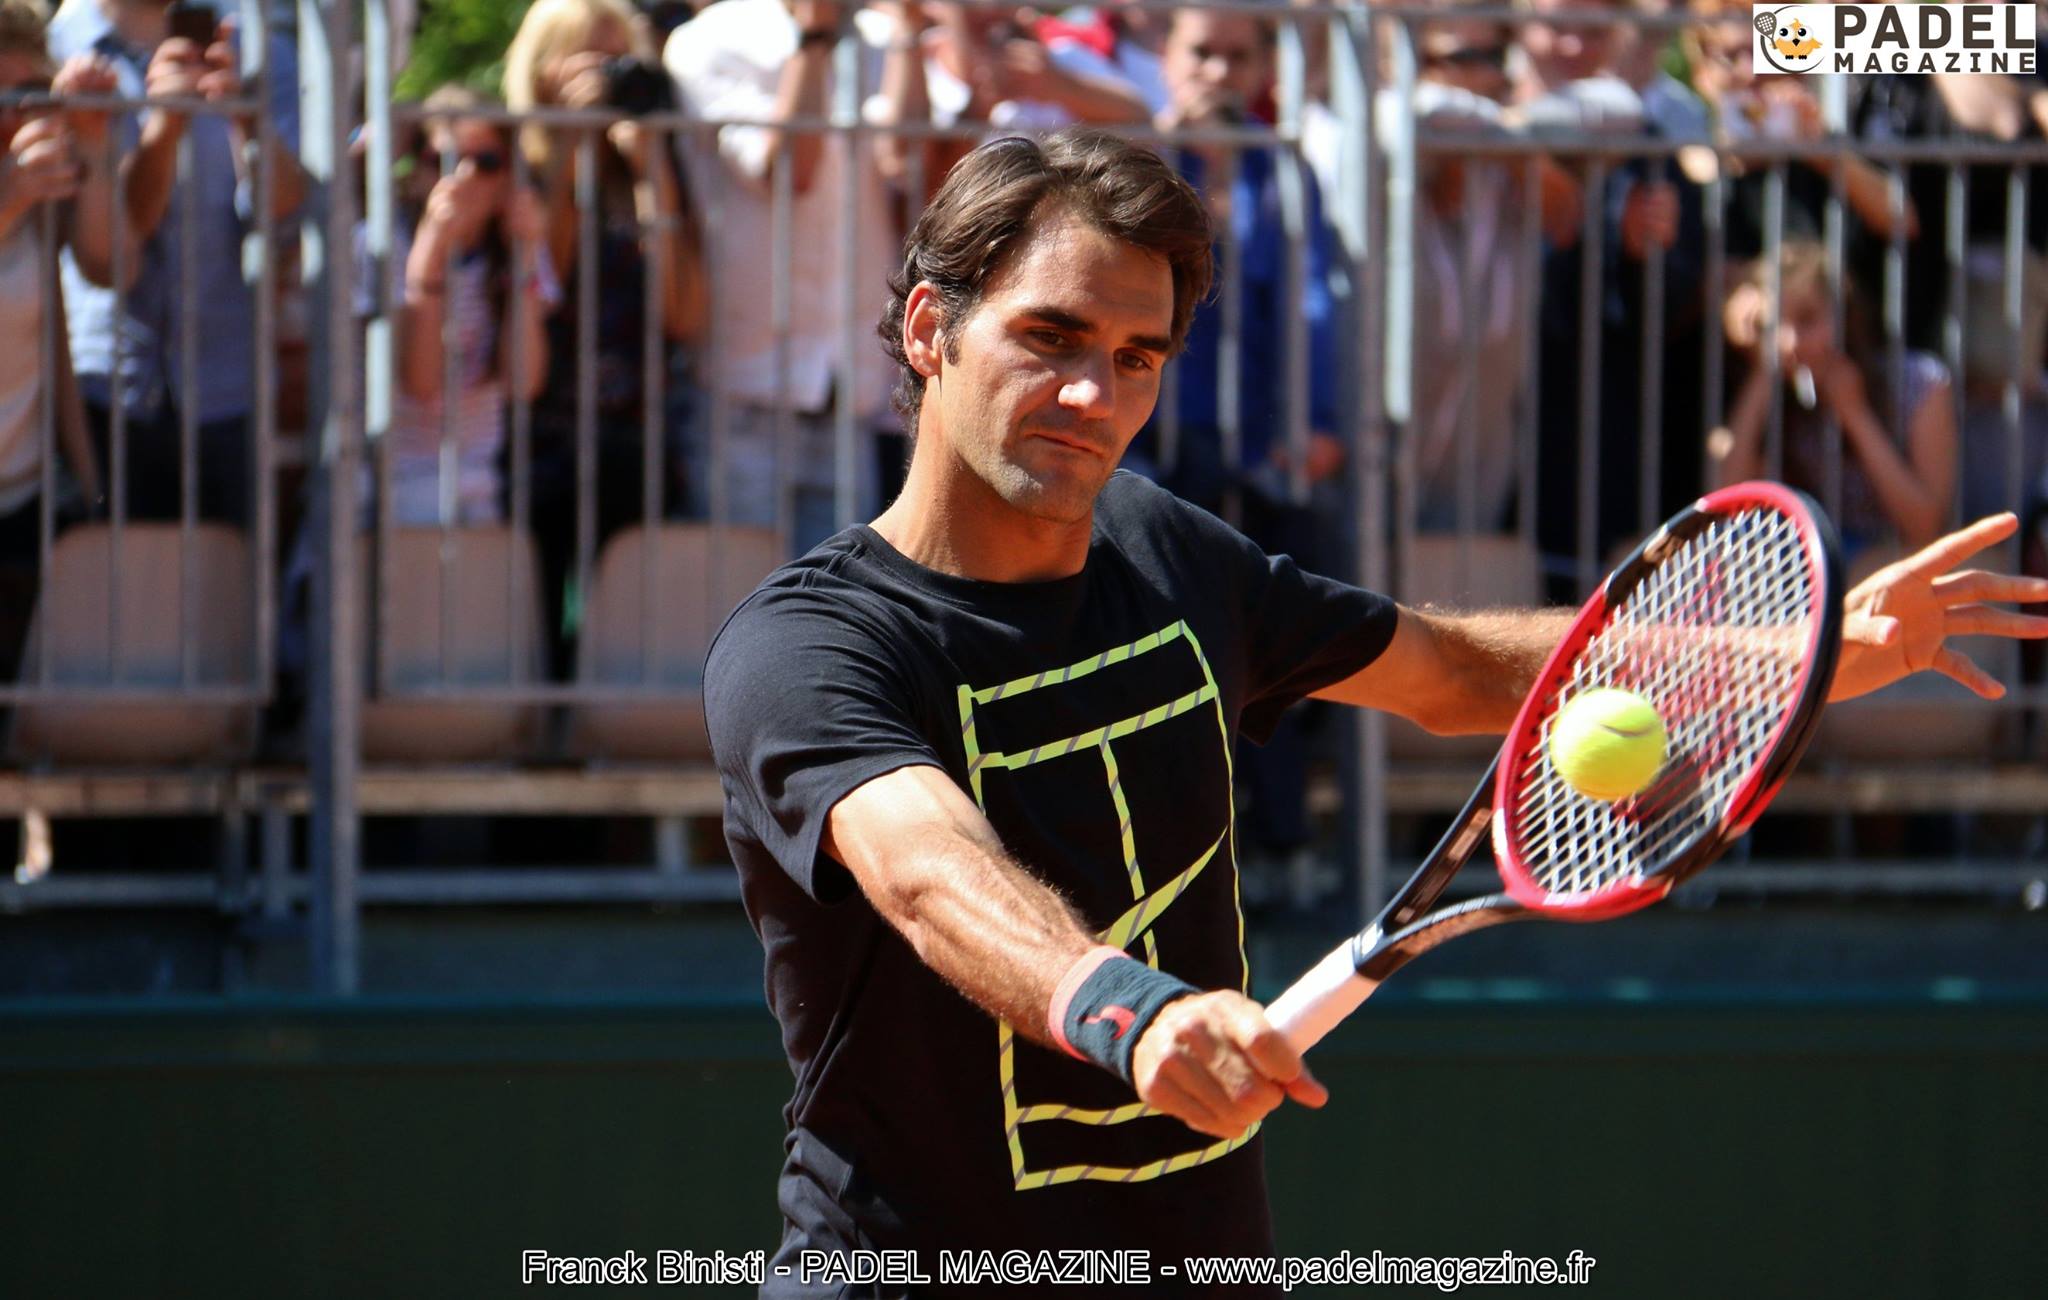 Roger Federer en padel : sueño o realidad futura?